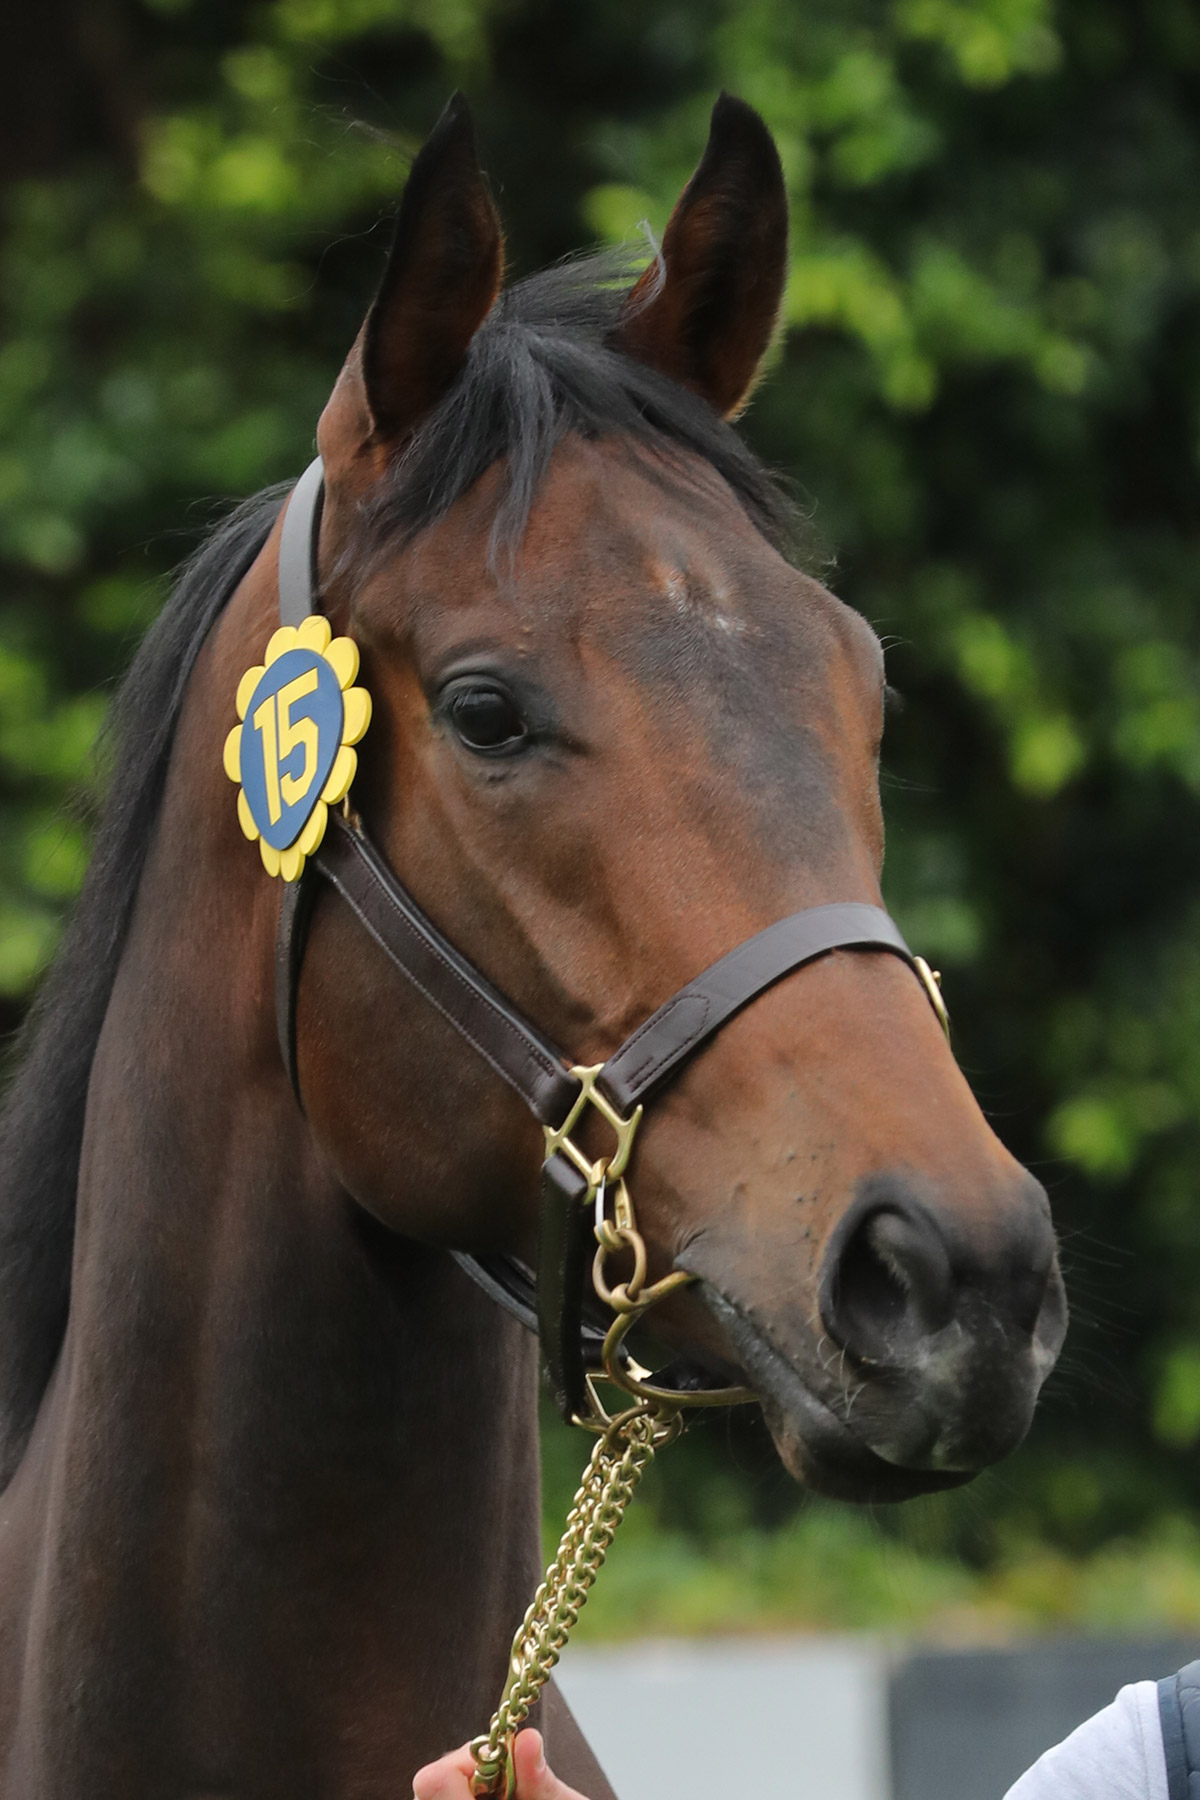 編號15拍賣馬是在英國培育的棗色閹馬，父系為「志氣高」(Invincible Spirit)。